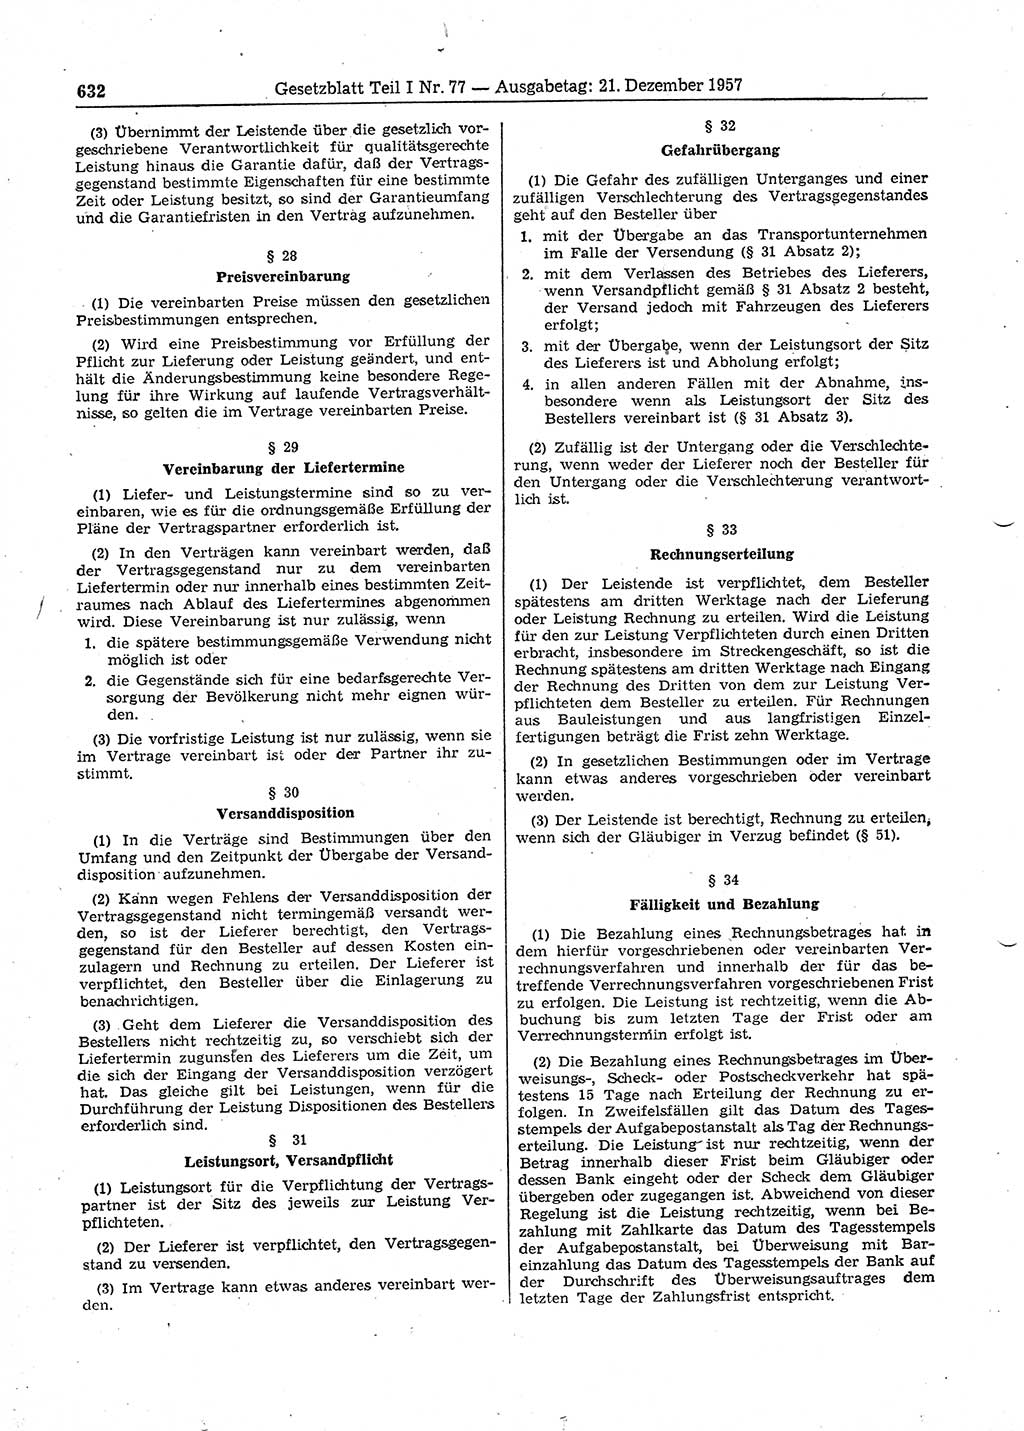 Gesetzblatt (GBl.) der Deutschen Demokratischen Republik (DDR) Teil Ⅰ 1957, Seite 632 (GBl. DDR Ⅰ 1957, S. 632)